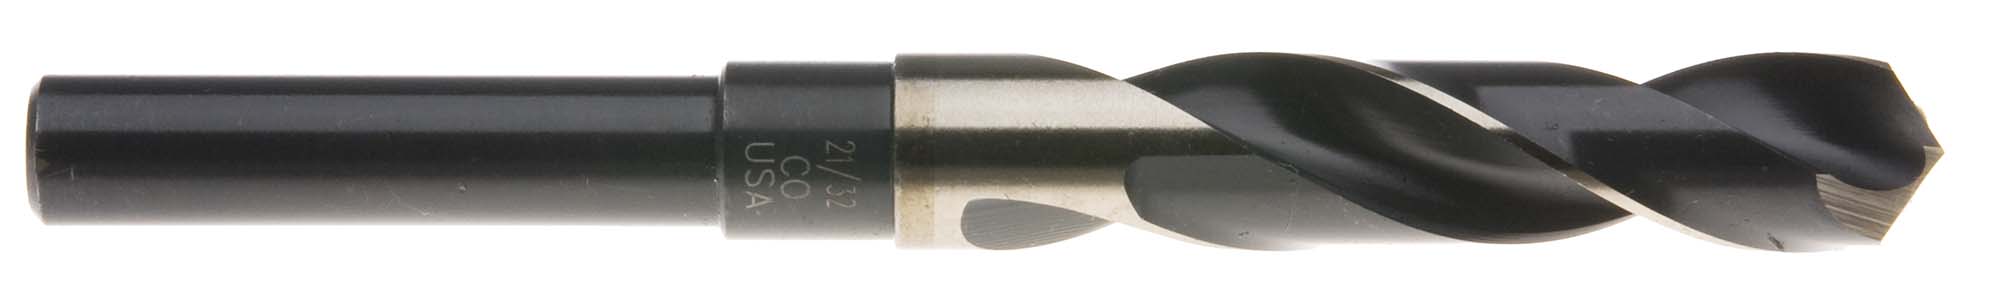 25/32" S and D Drill (1/2" shank) USA Cobalt